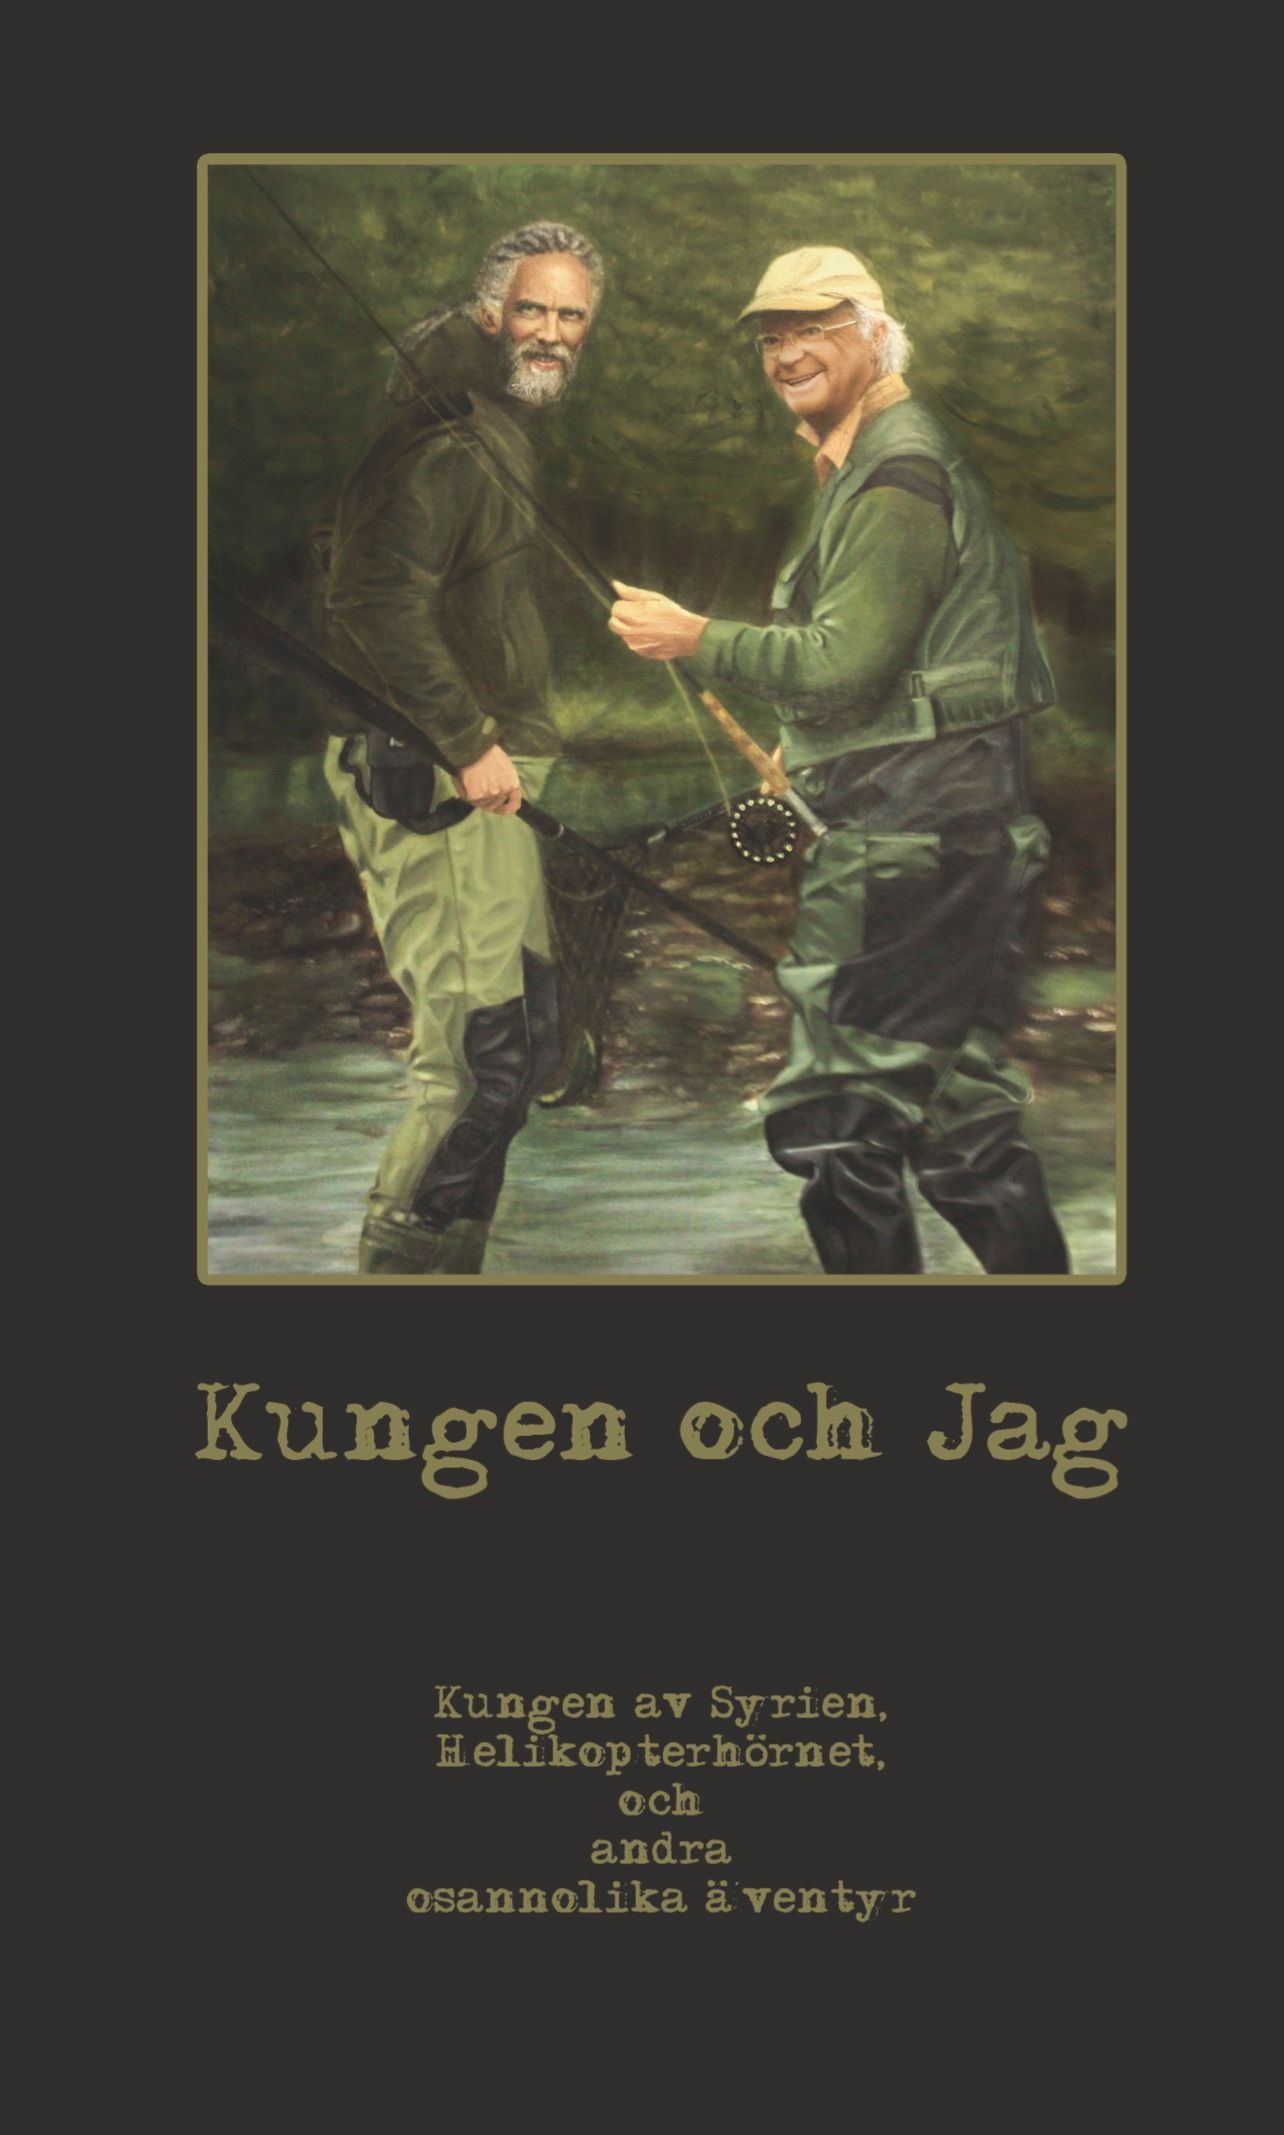 Kungen och Jag, eBook by PapaFahr